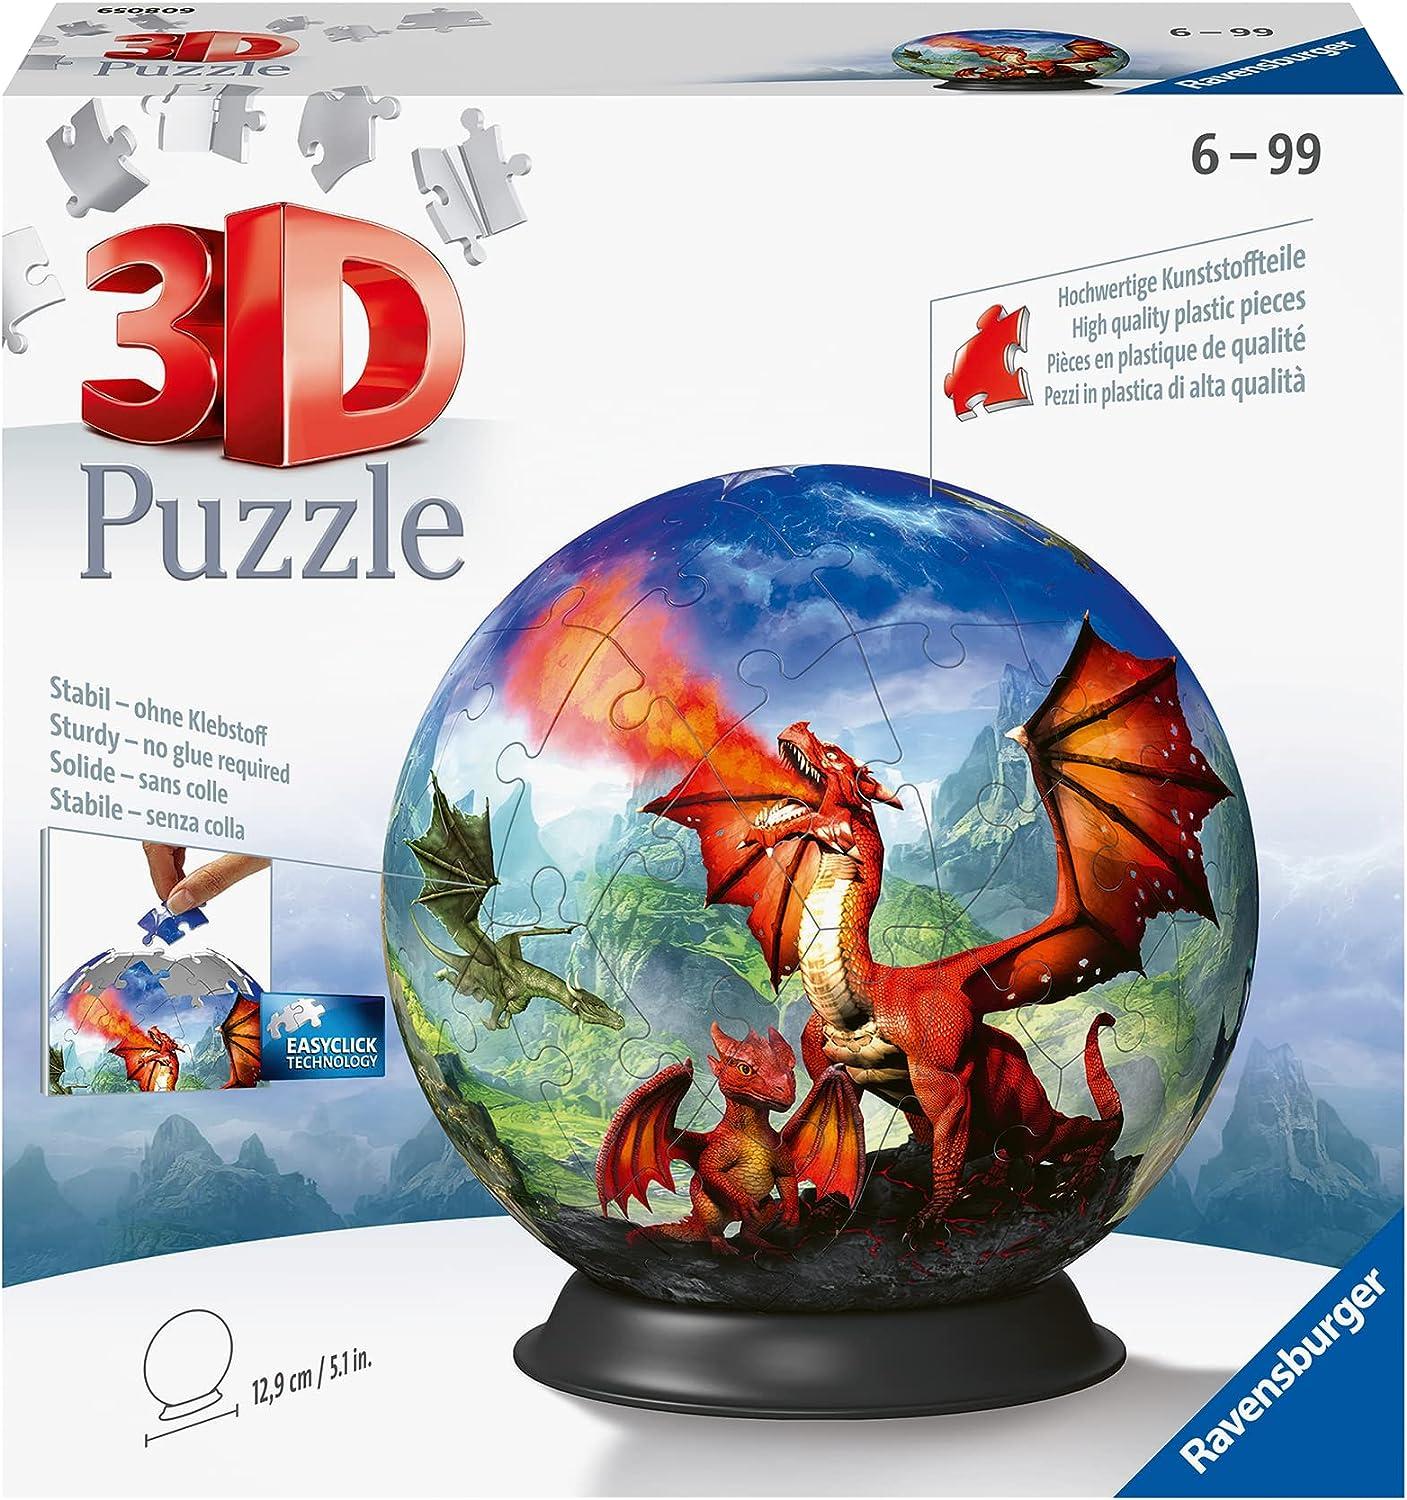 Ravensburger 3D Puzzle - Puzzle-Ball Mystische Drachen